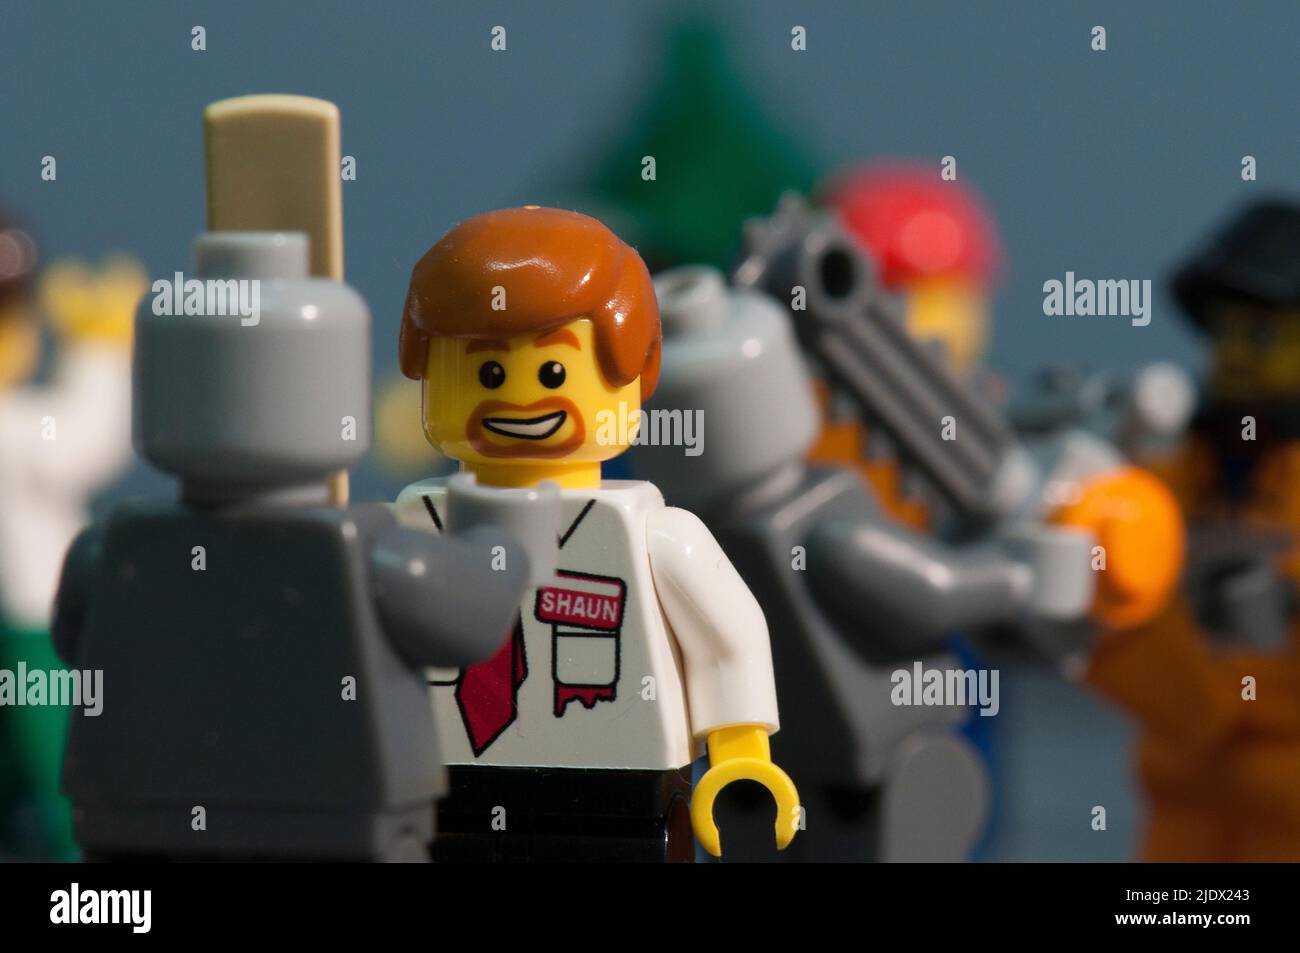 Lego zombie apocalypse Stock Photo - Alamy